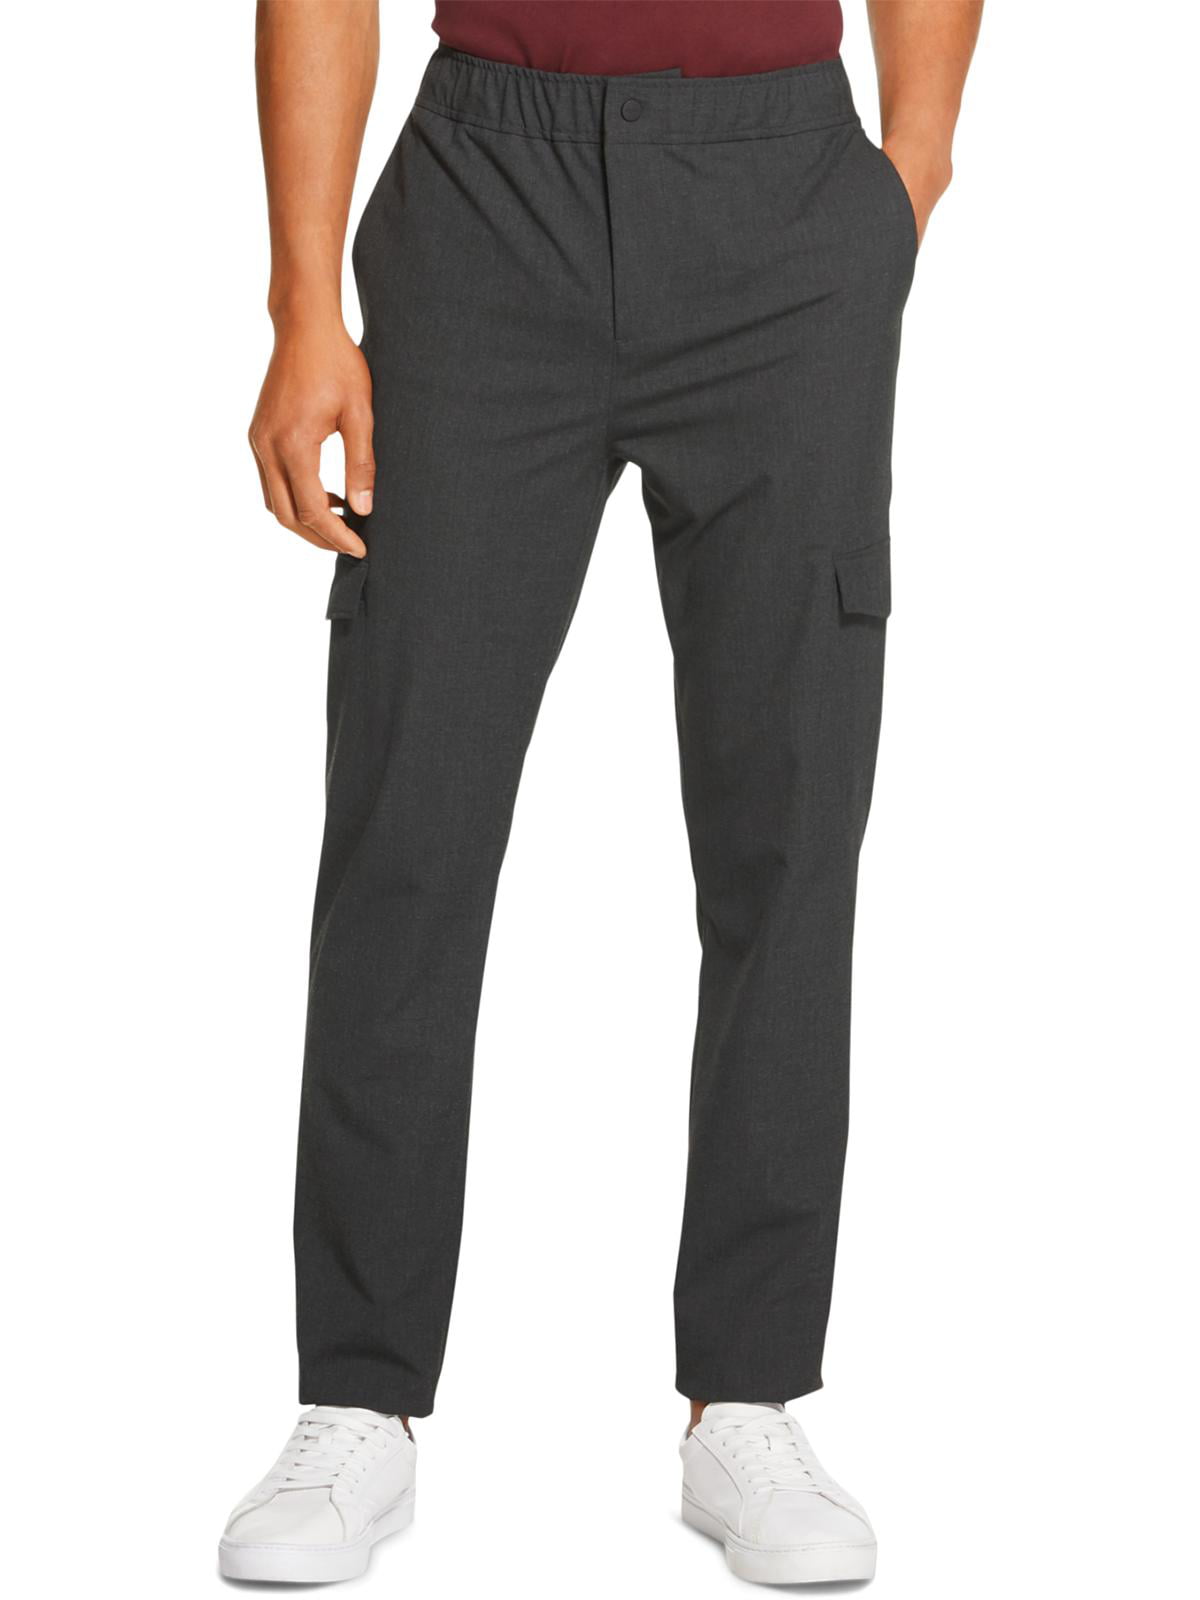 DKNY Mens Mid-Rise Straight Cargo Pants Gray S - Walmart.com